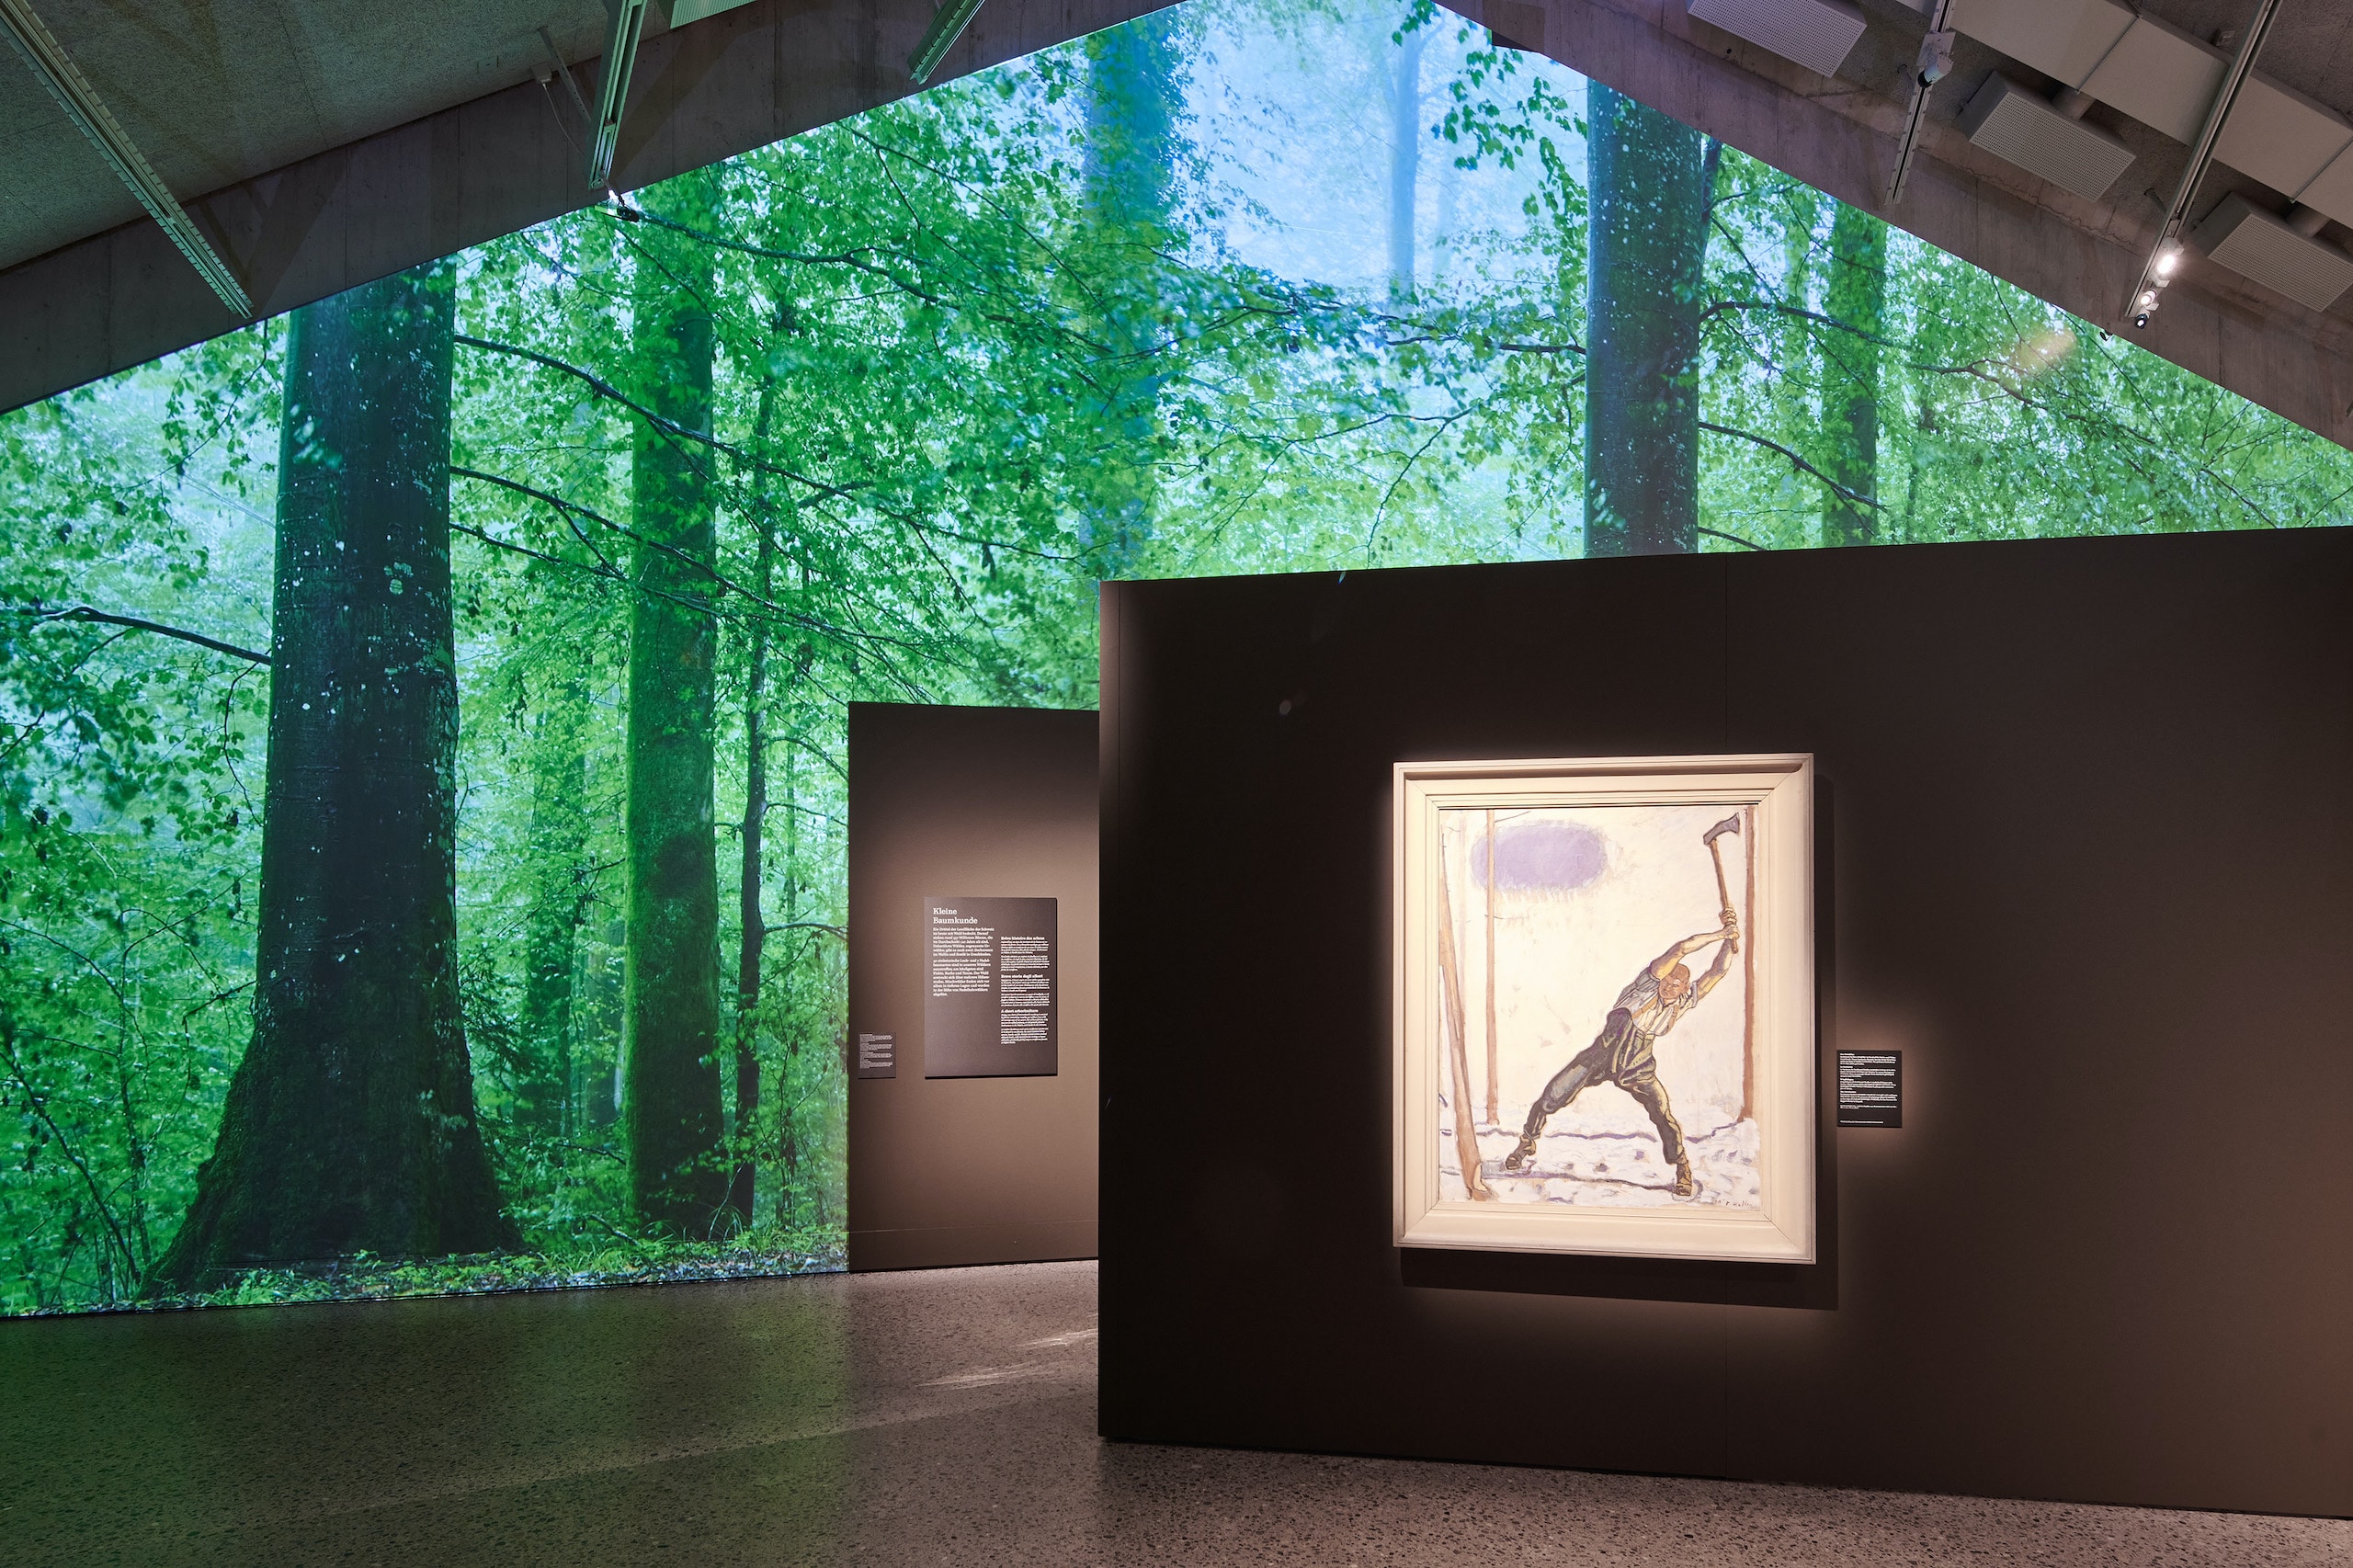 Лес рубят - щепки летят. На выставке «В лесу». Цюрих, 2022 г. (© Швейцарский национальный музей)